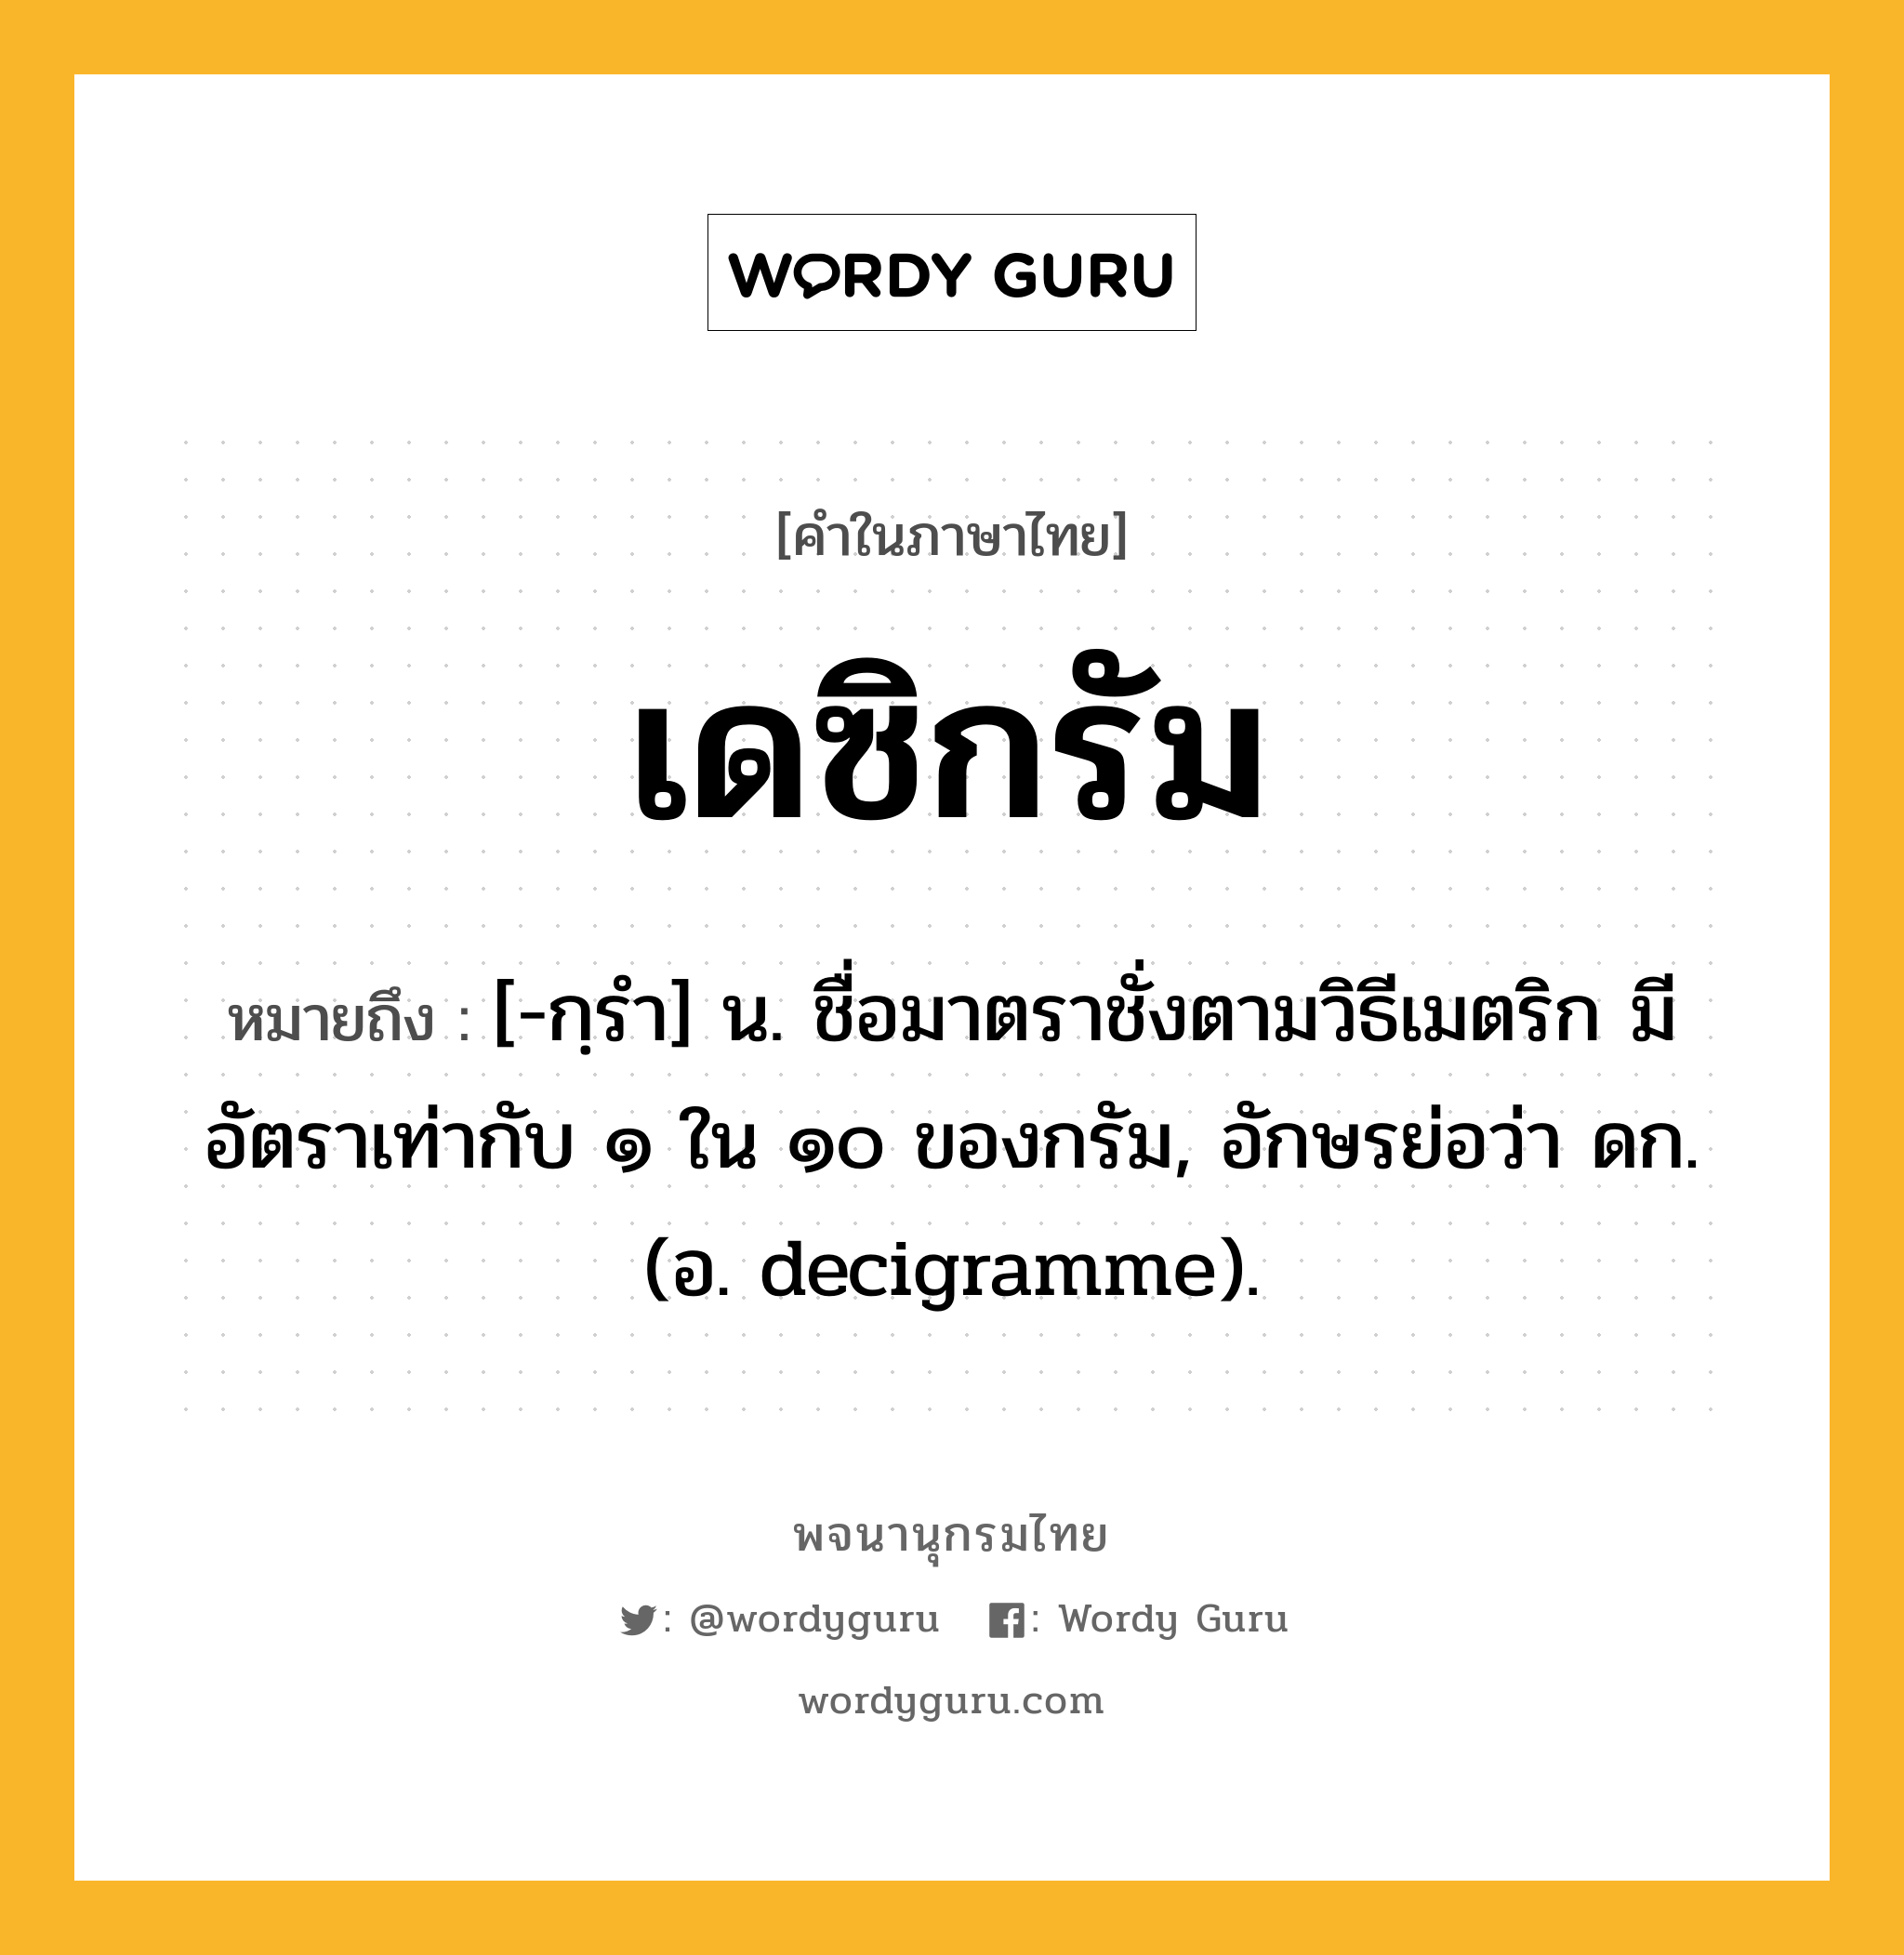 เดซิกรัม ความหมาย หมายถึงอะไร?, คำในภาษาไทย เดซิกรัม หมายถึง [-กฺรํา] น. ชื่อมาตราชั่งตามวิธีเมตริก มีอัตราเท่ากับ ๑ ใน ๑๐ ของกรัม, อักษรย่อว่า ดก. (อ. decigramme).